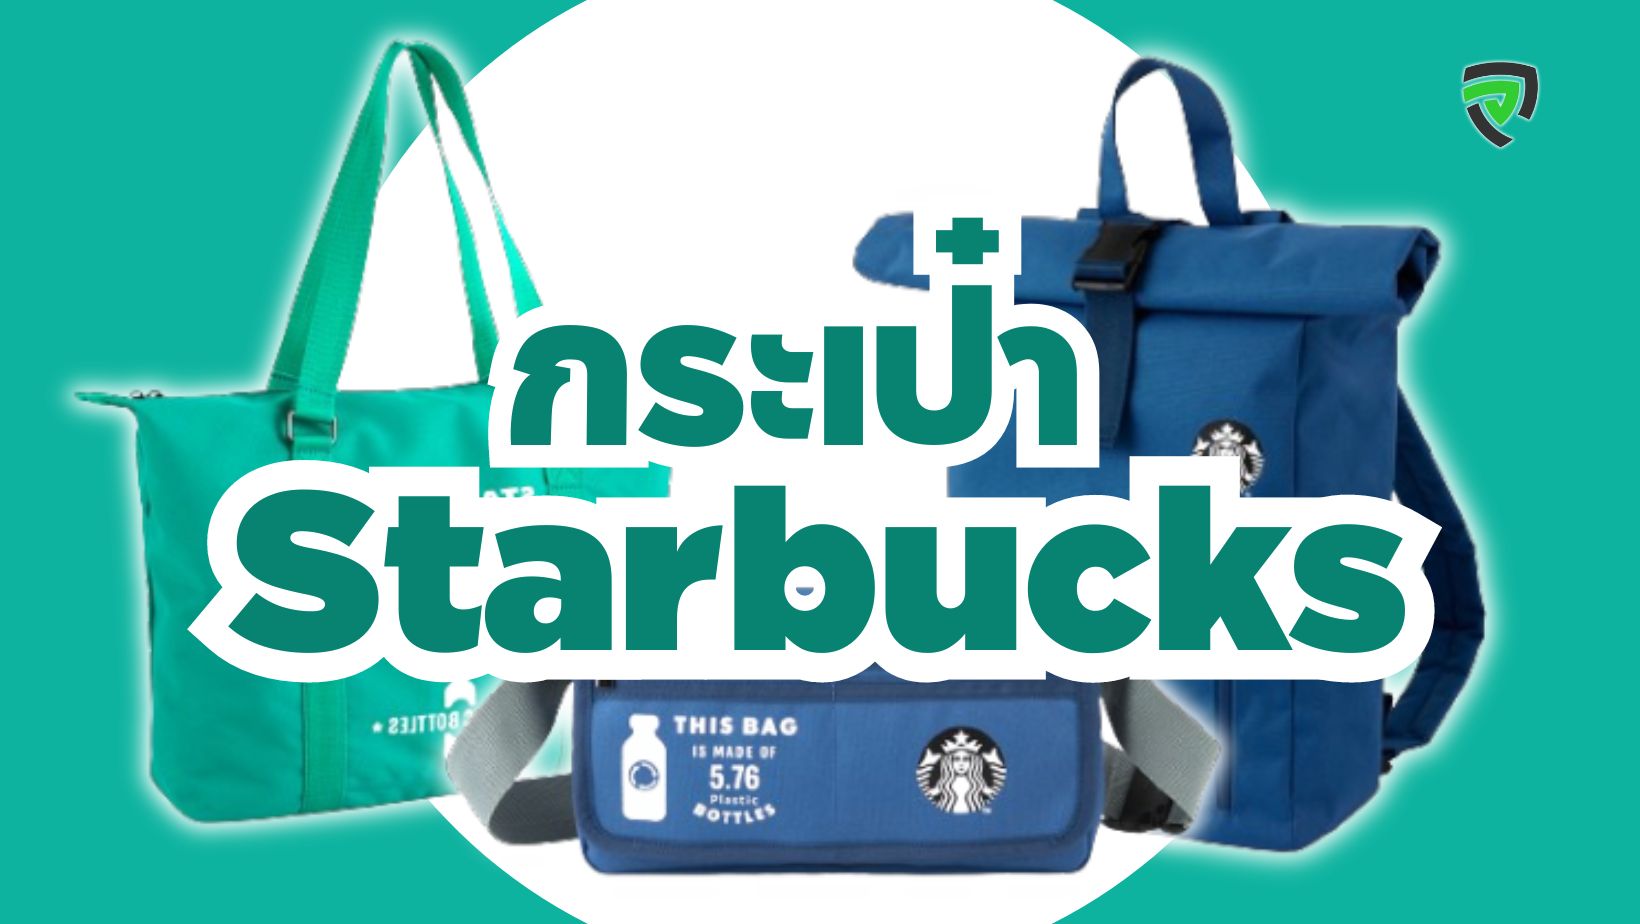 กระเป๋าสตาร์บัคส์ Starbucks ยอดฮิต ดีไซน์เก๋ หลากหลายรุ่น สามารถใช้ได้ทุกวัน-cover